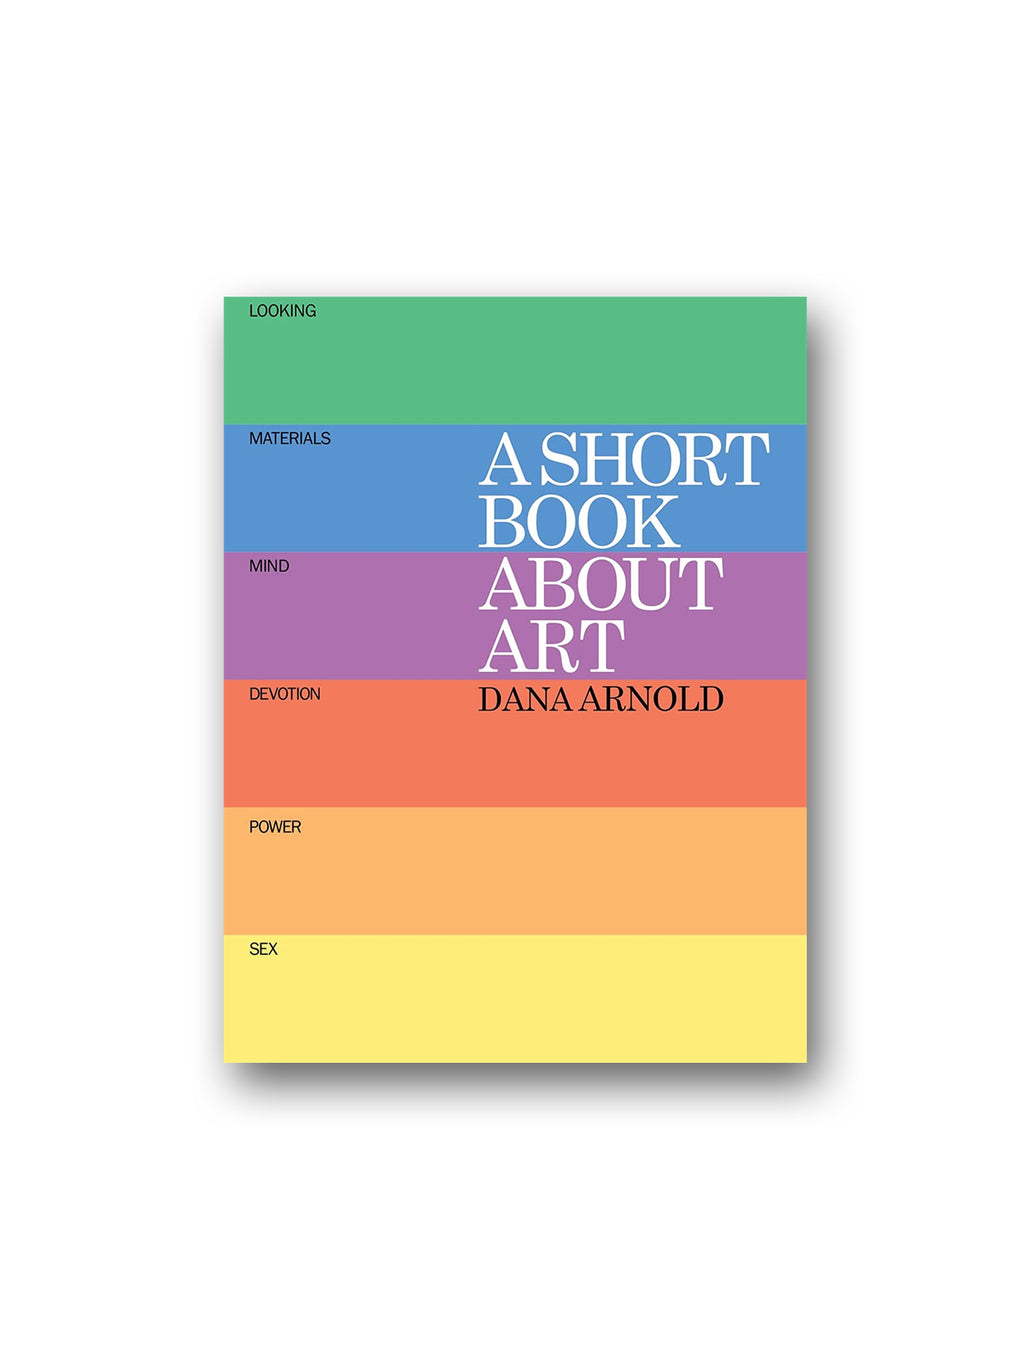 A Short Book About Art